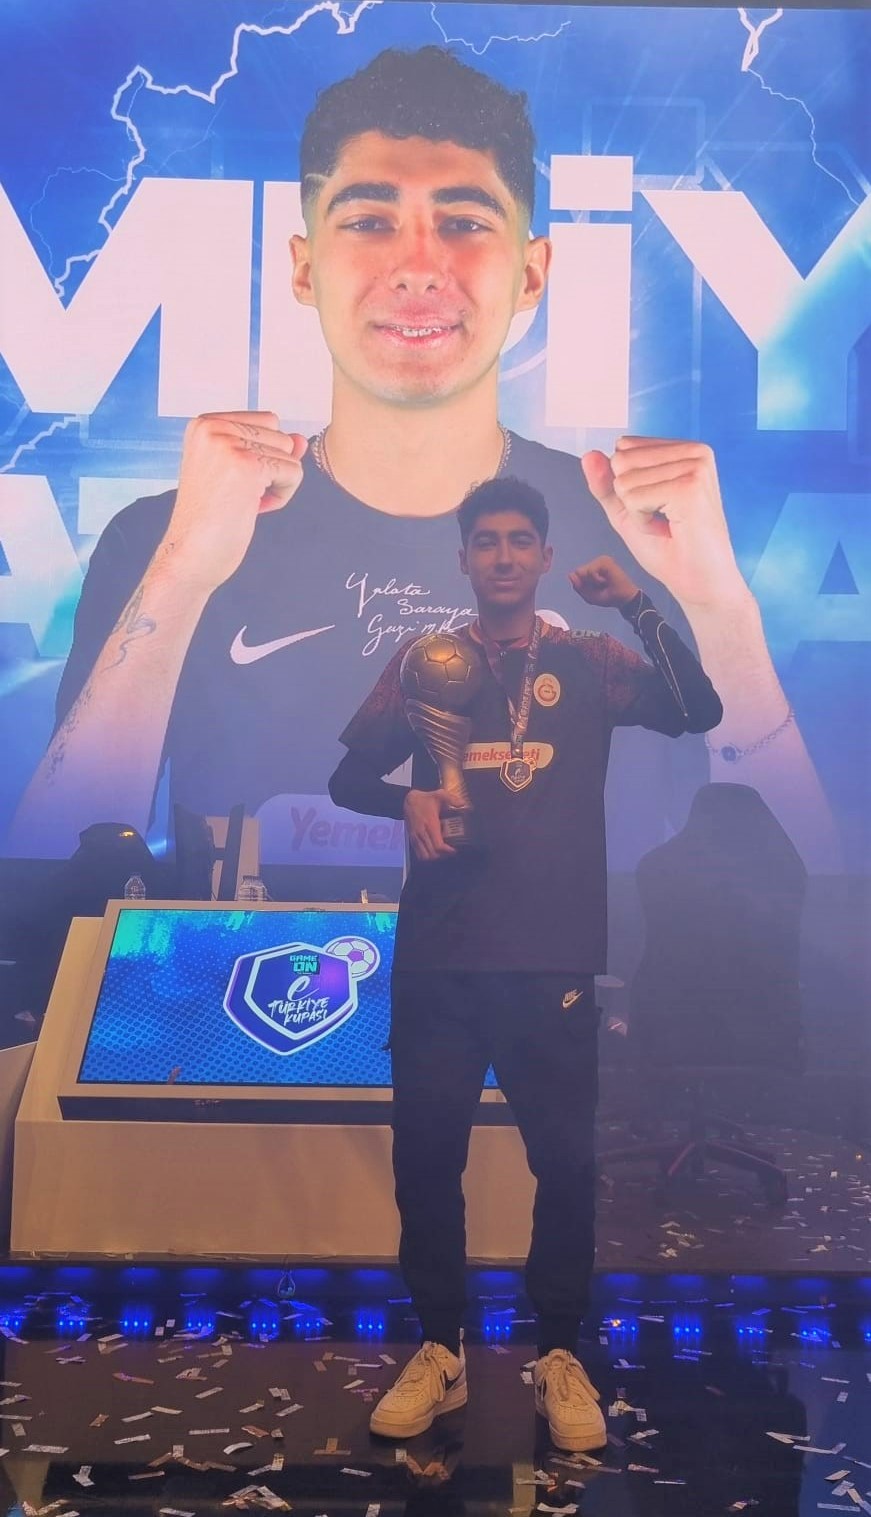 Türk Telekom GAMEON eTürkiye Kupası’nda şampiyon Galatasaray oldu